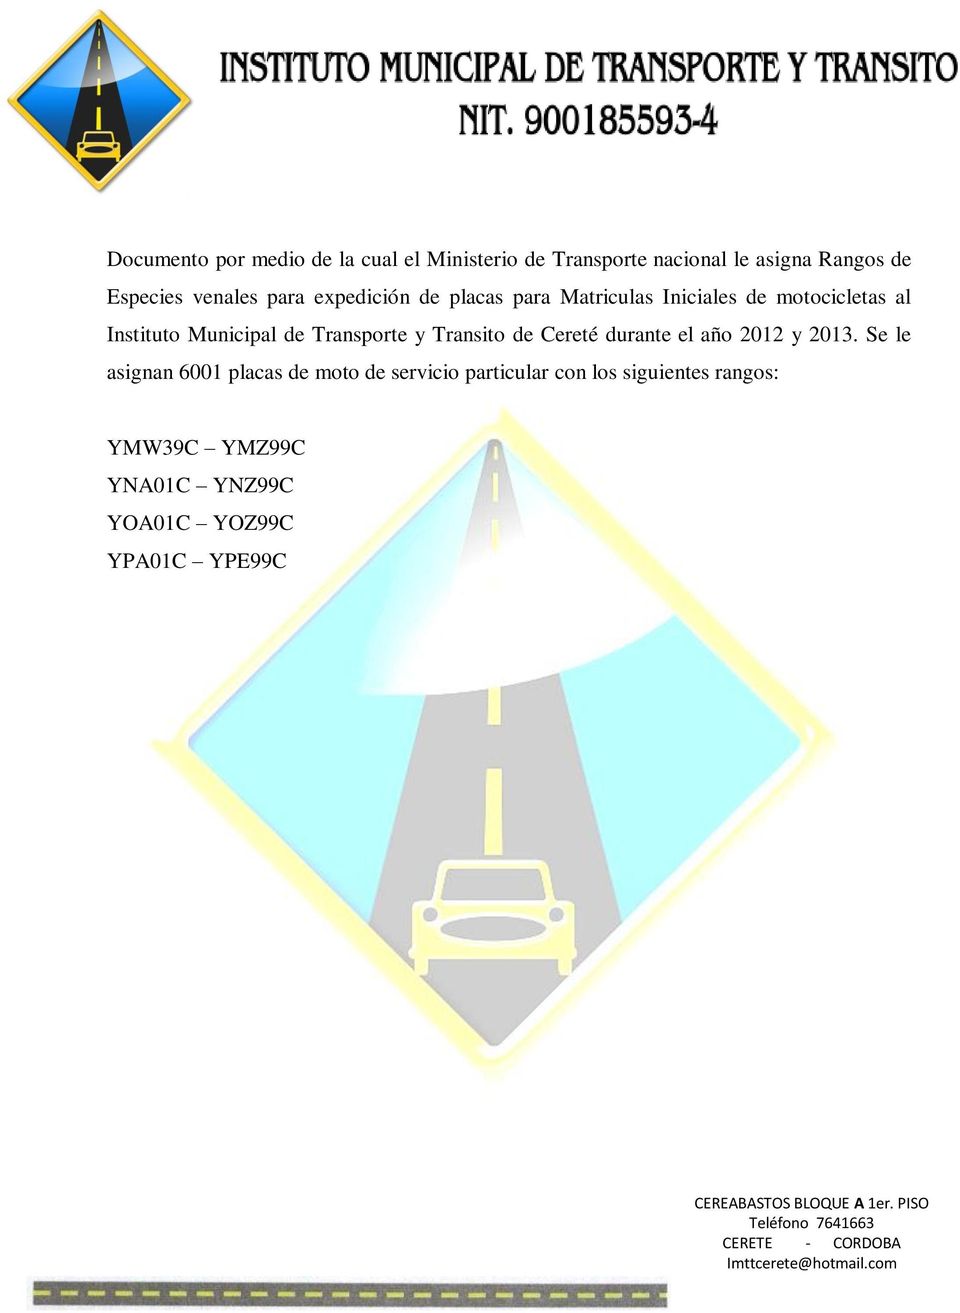 de Transporte y Transito de Cereté durante el año 2012 y 2013.